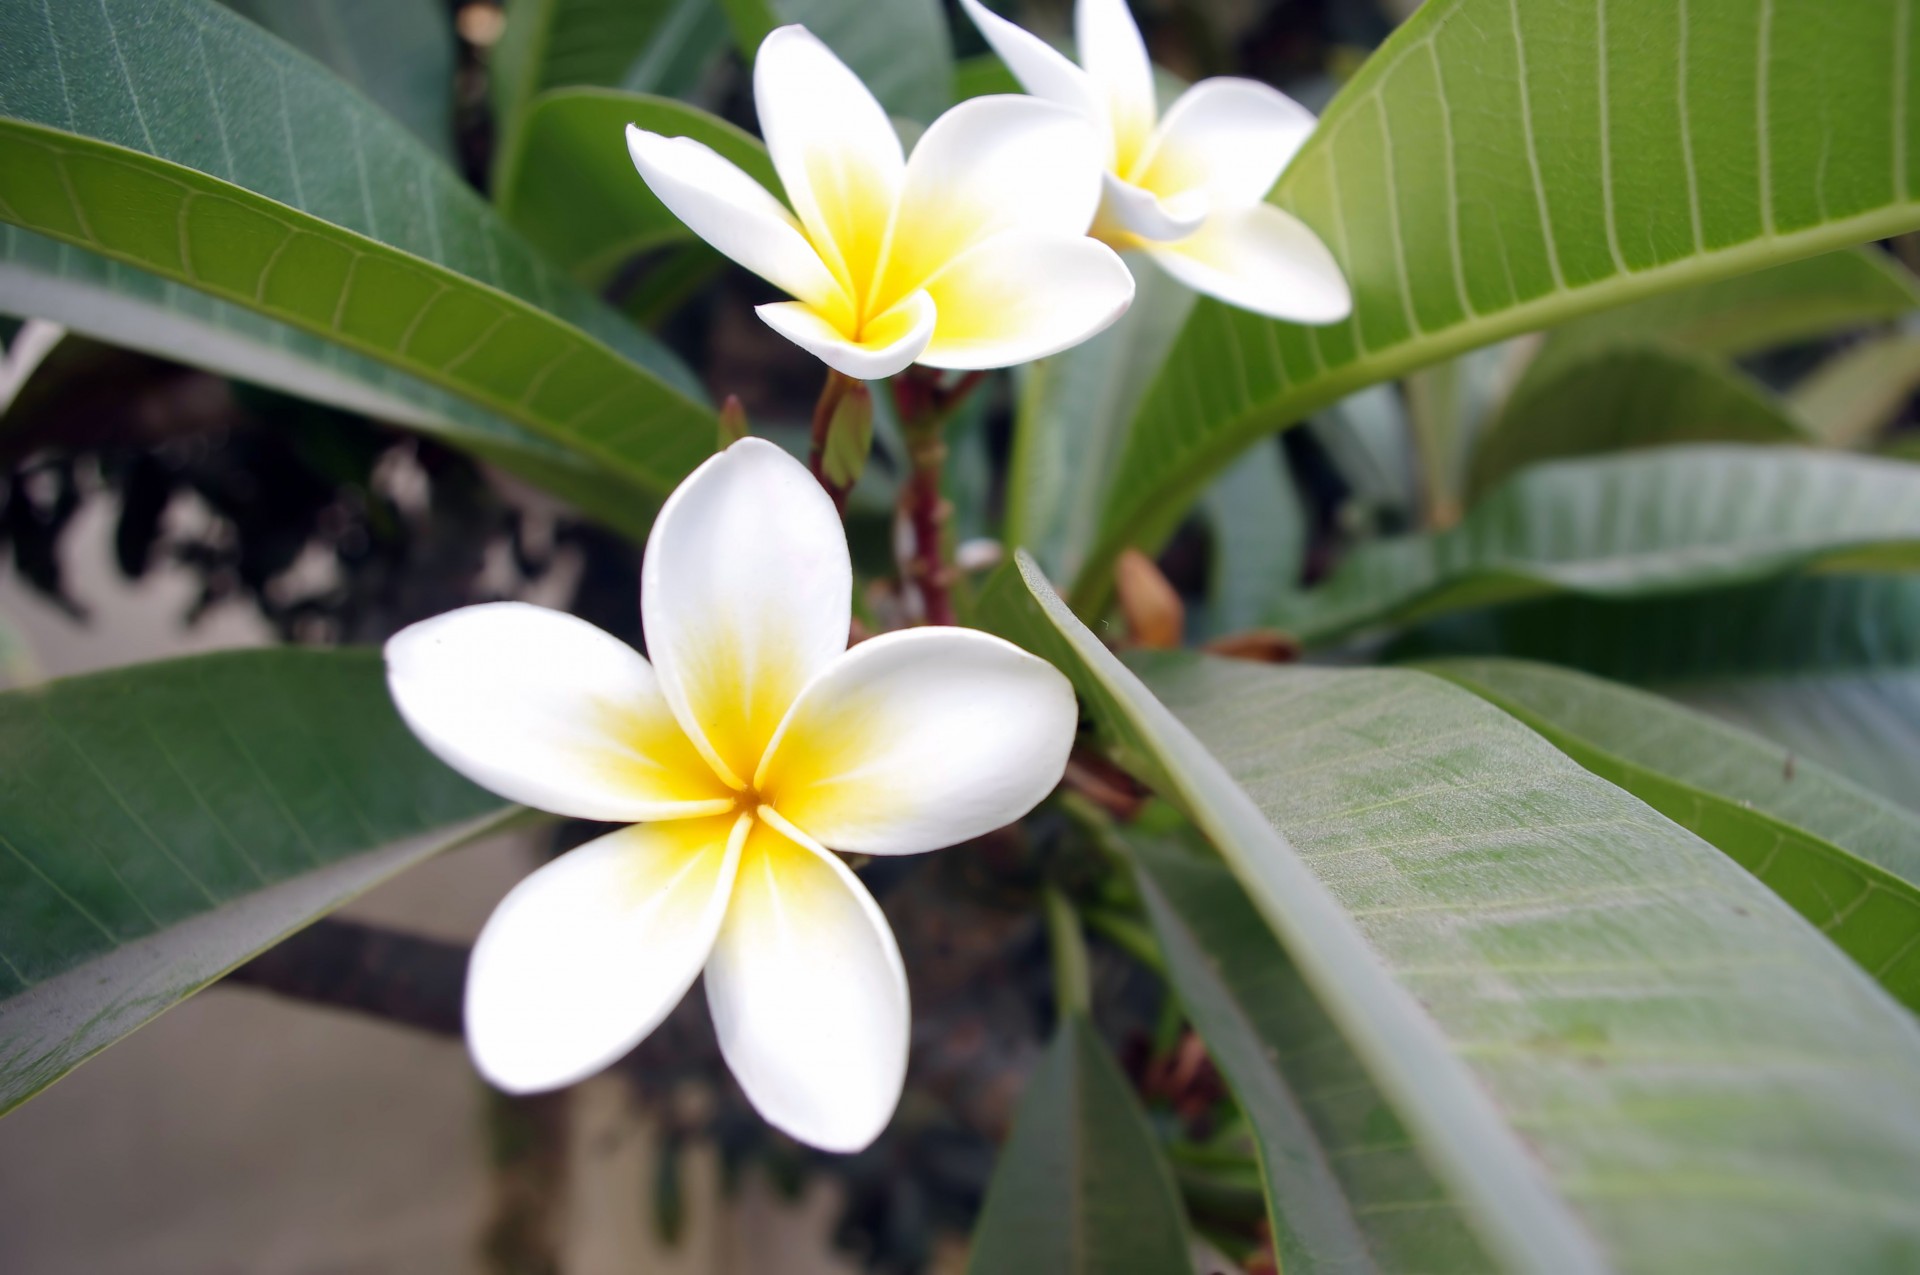 frangipani flowers beautiful free photo